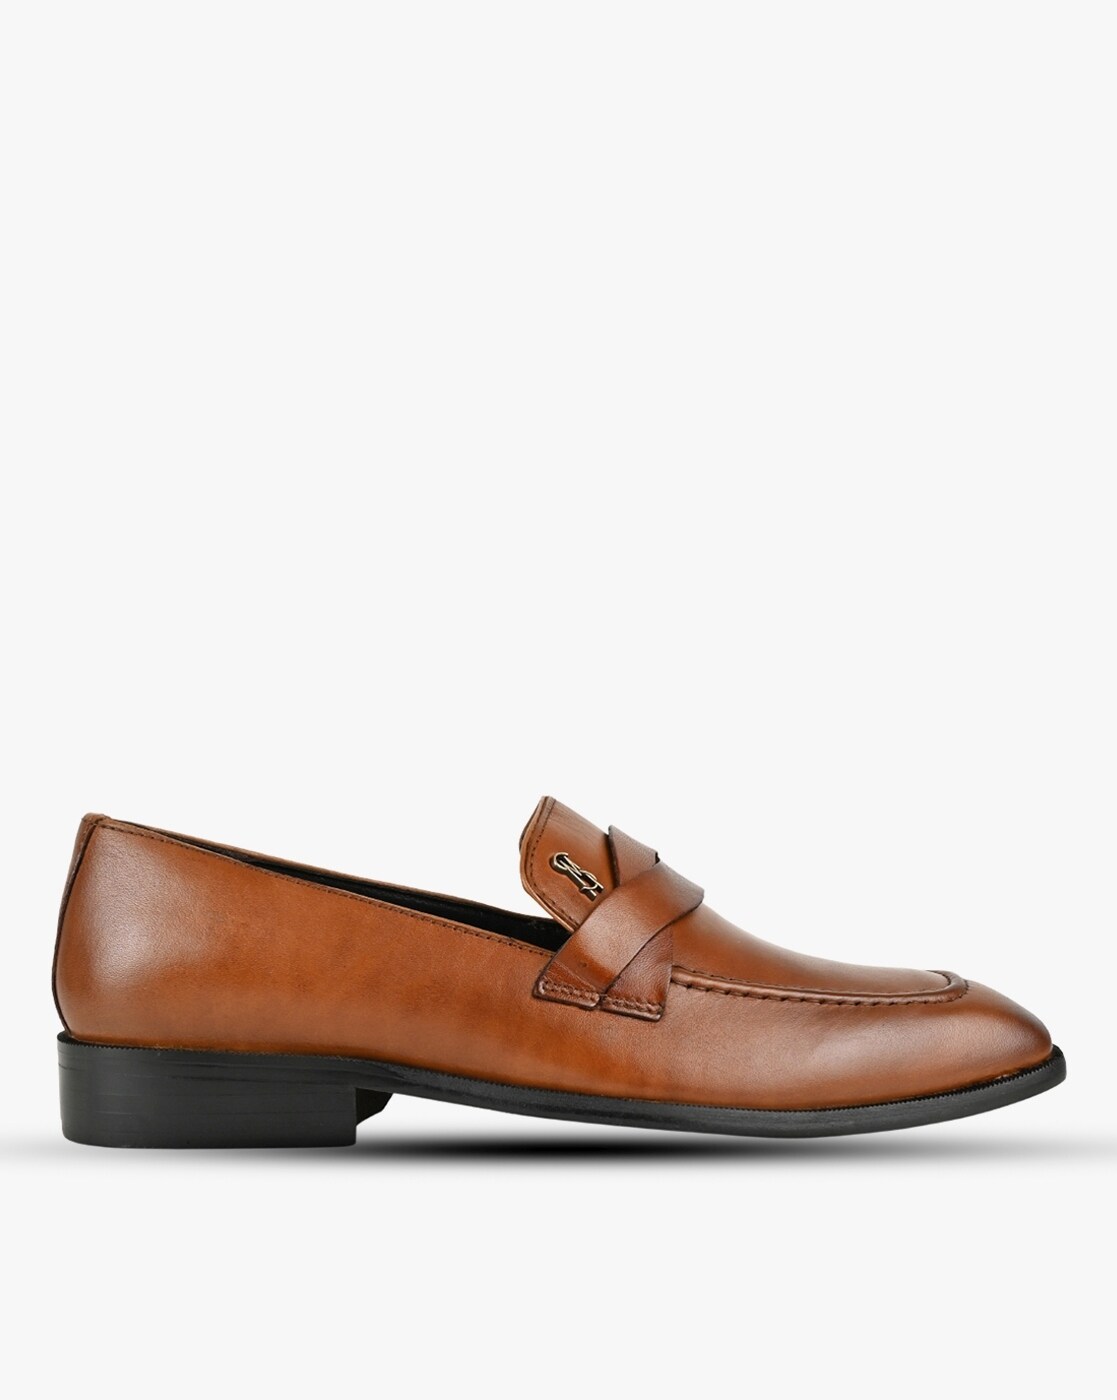 ONDRE Tan Suede Tassel Loafer  Men's Dress Shoes – Steve Madden